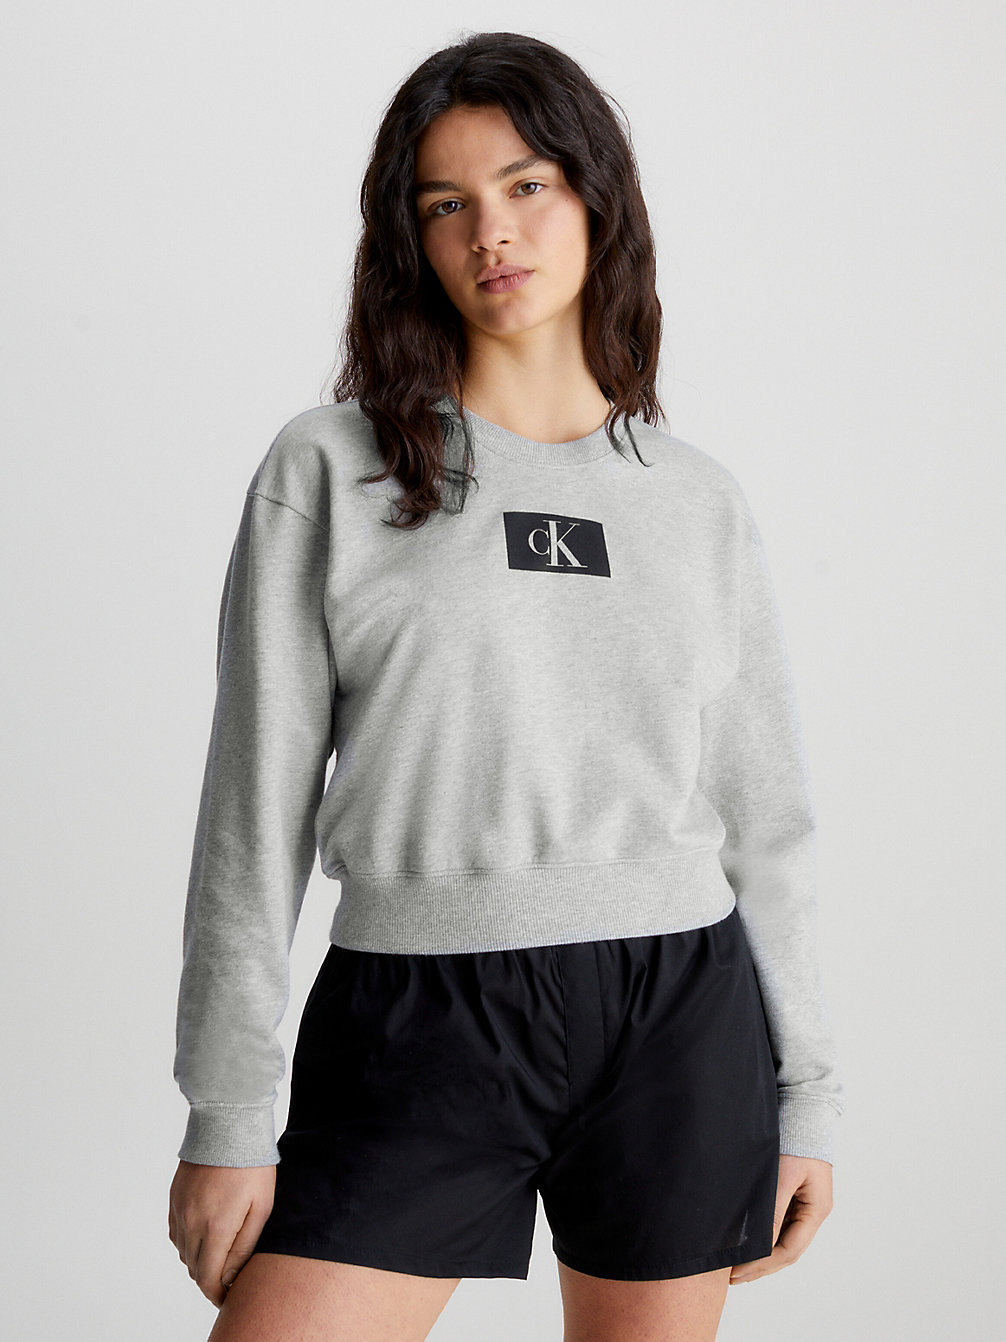 GREY HEATHER > Lounge-Sweatshirt - Ck96 > undefined Damen - Calvin Klein